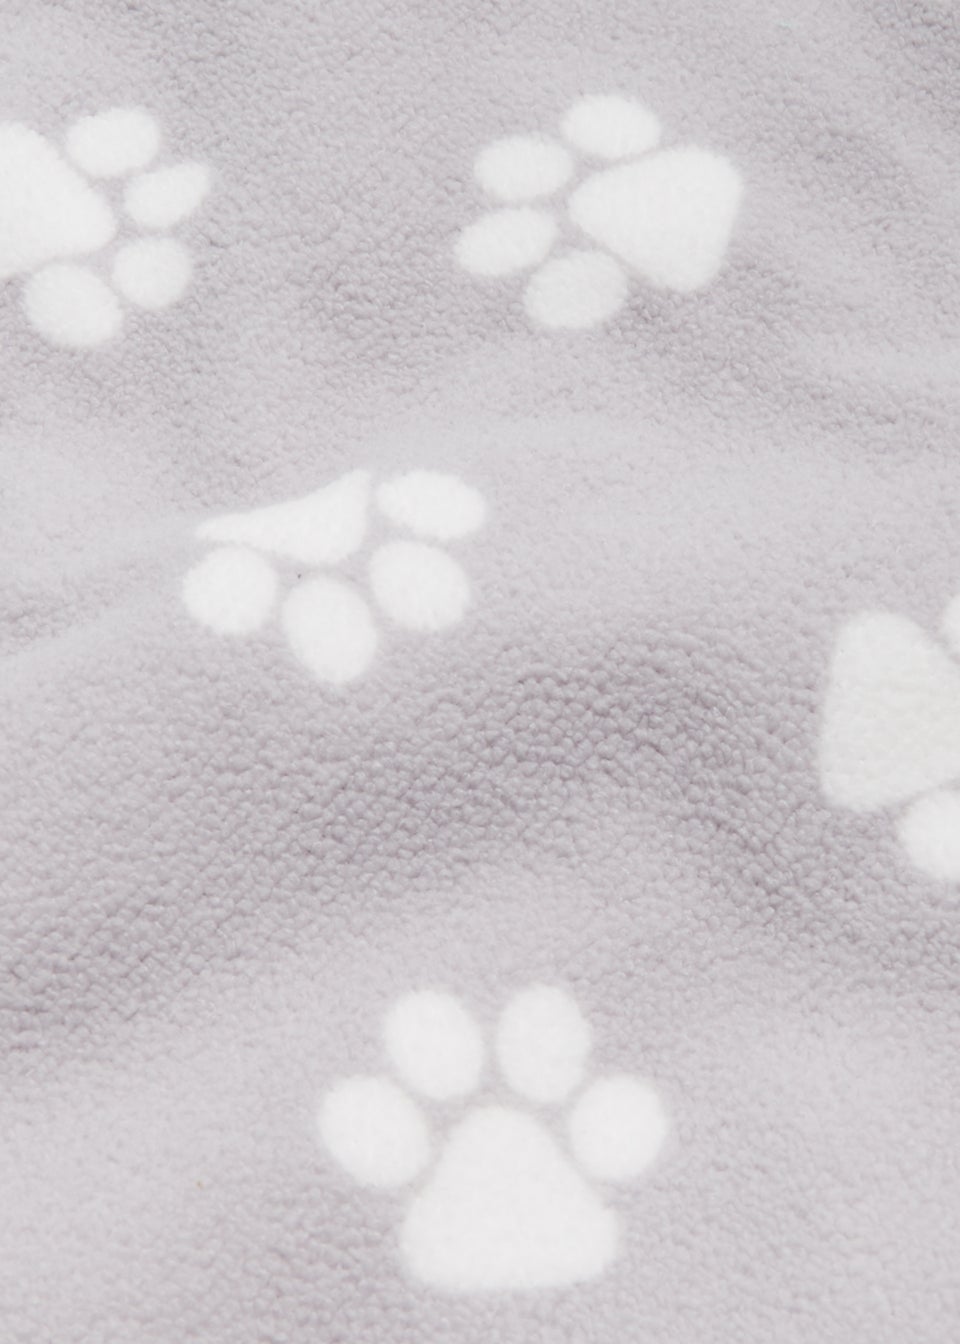 Grey Paw Print Pet Towel (120cm x 80cm)